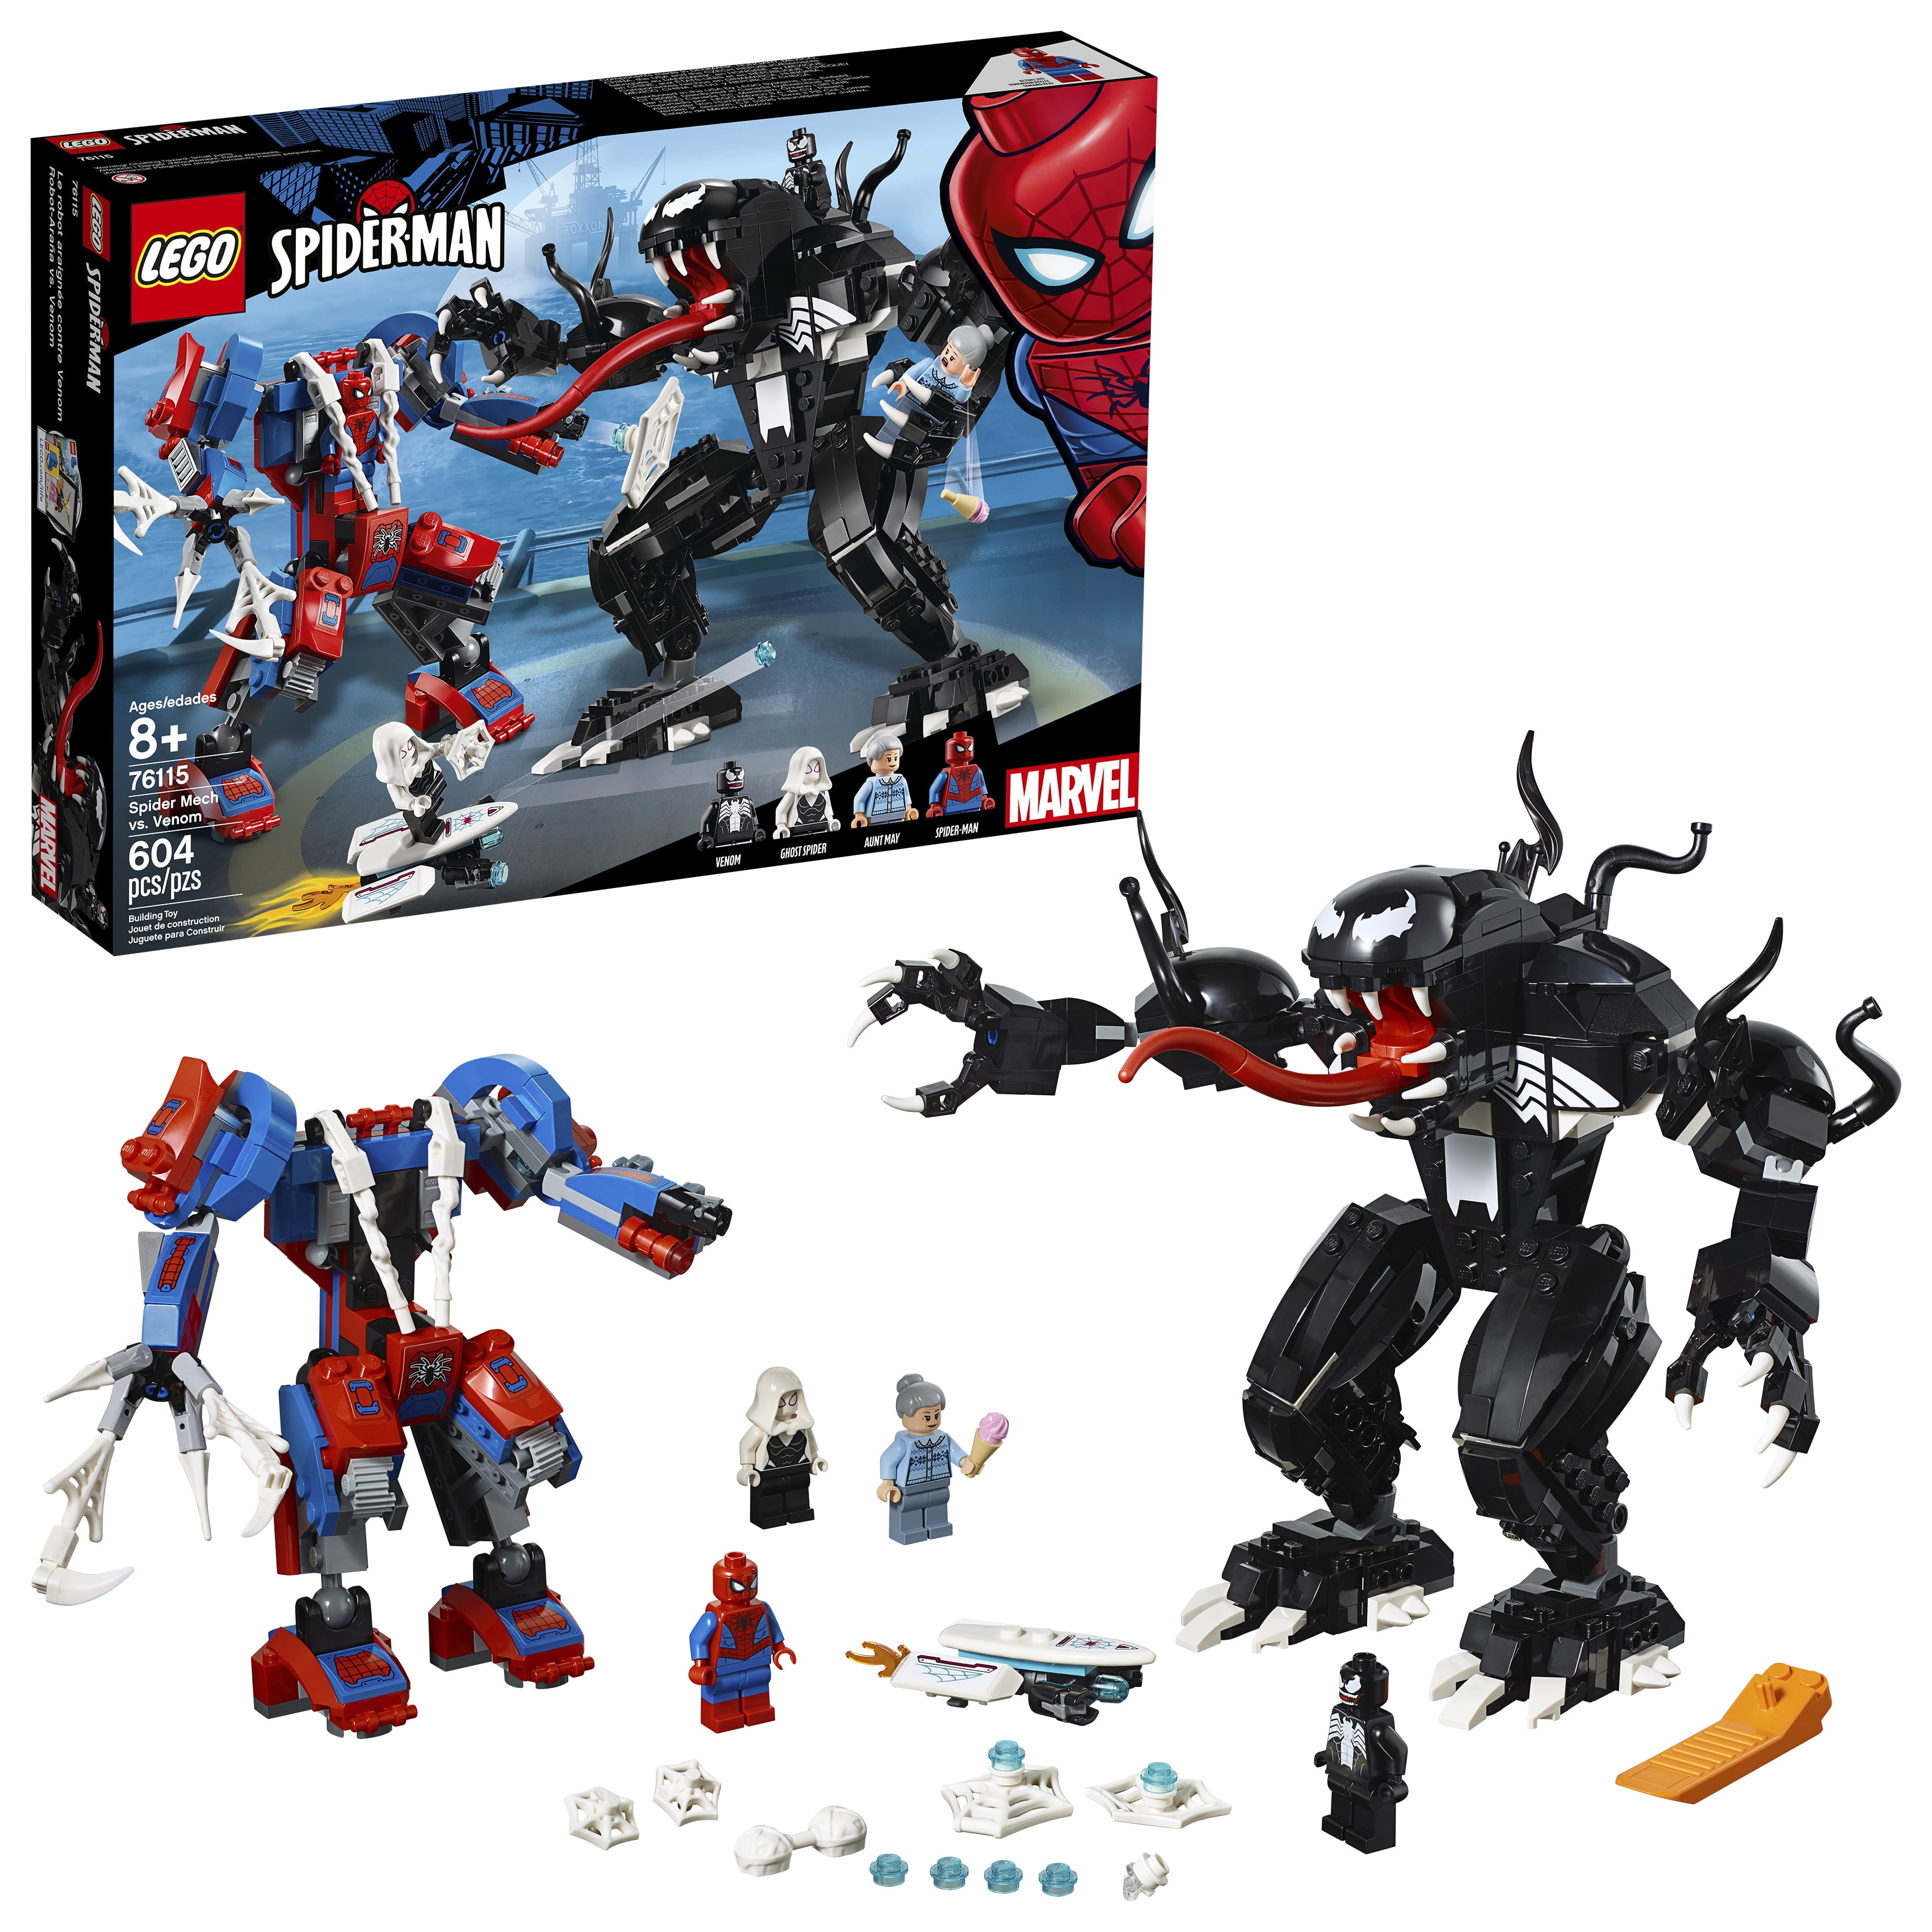 Giocattoli e modellismo SpiderMan Toys Ghost Rider Captain America Anti  Venom Building Blocks Figurines MK5512015